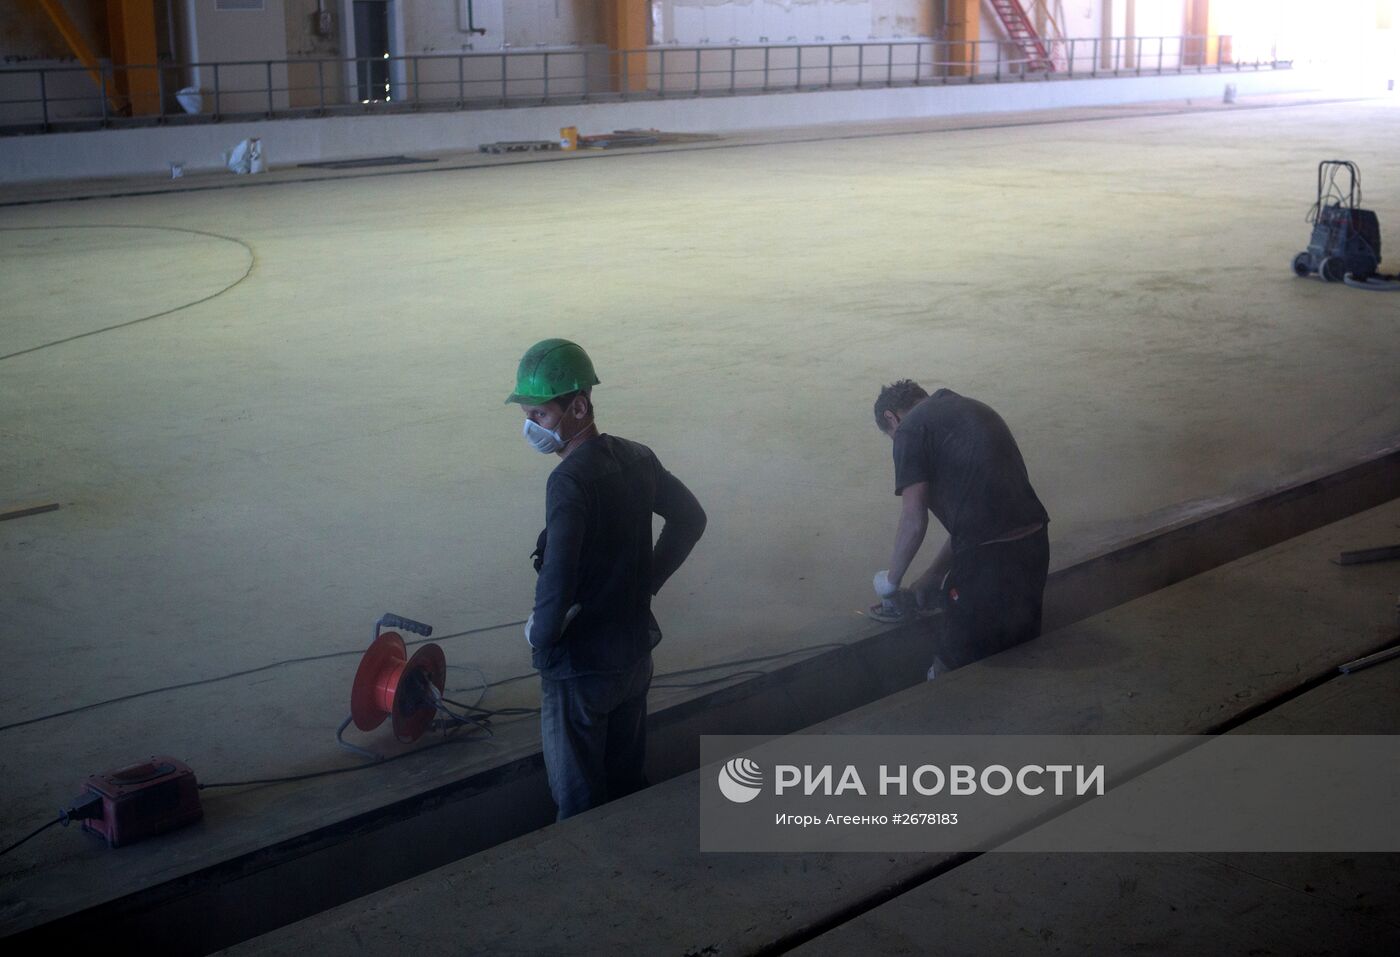 Строительство космодрома "Восточный" в Амурской области